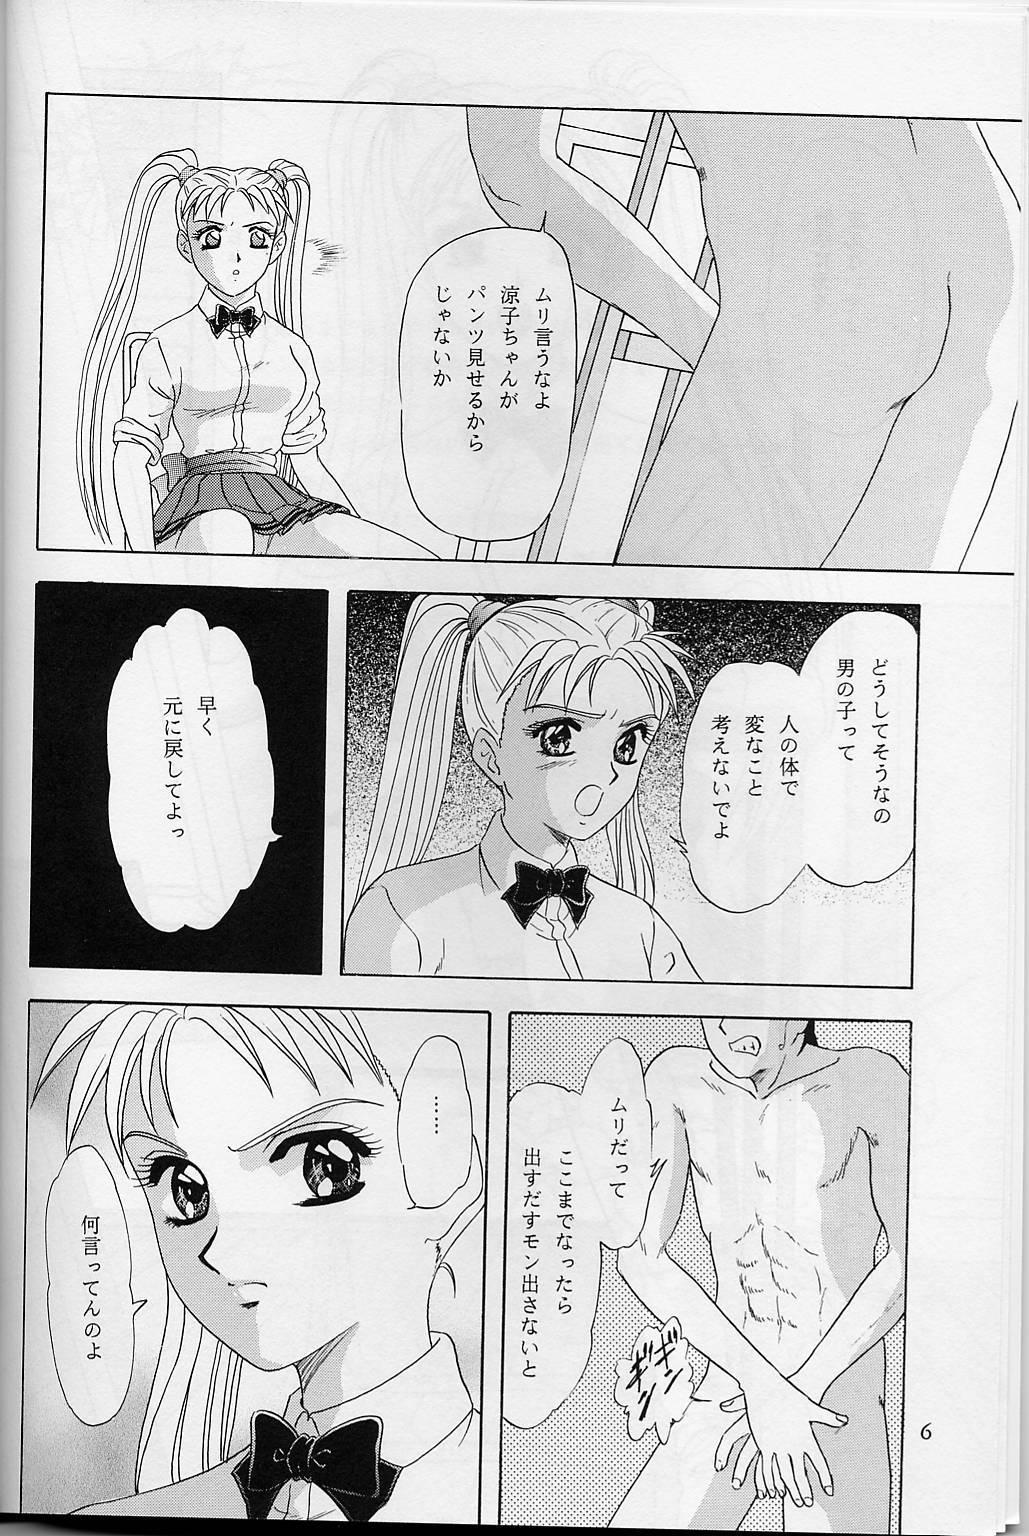 Putinha Lunch Box 32 - Toshishita no Onnanoko 3 - Kakyuusei Piercing - Page 5